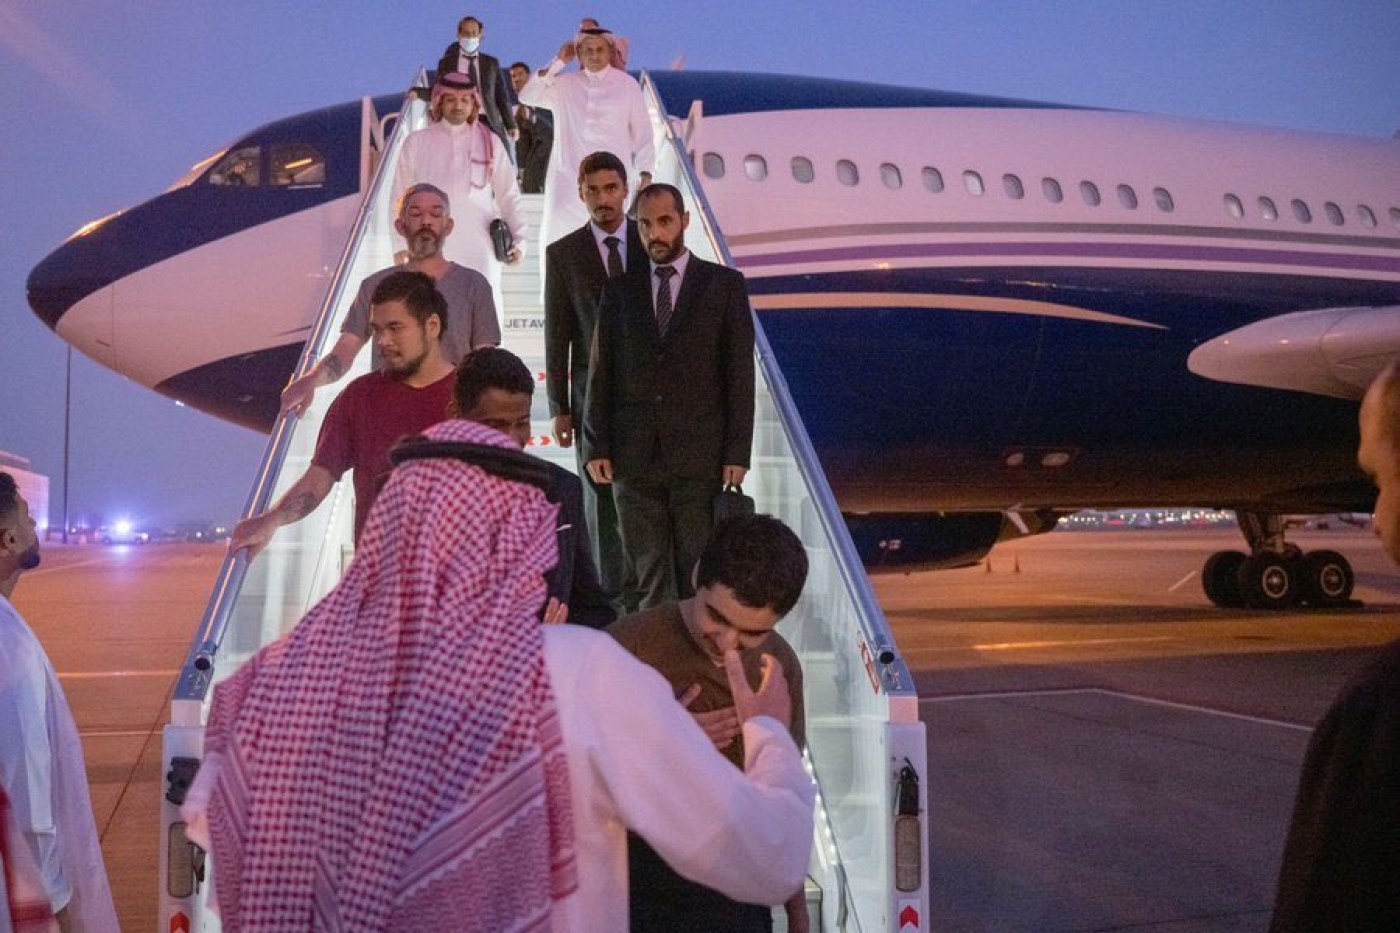  Les dix prisonniers à leur arrivée en Arabie saoudite (Twitter)